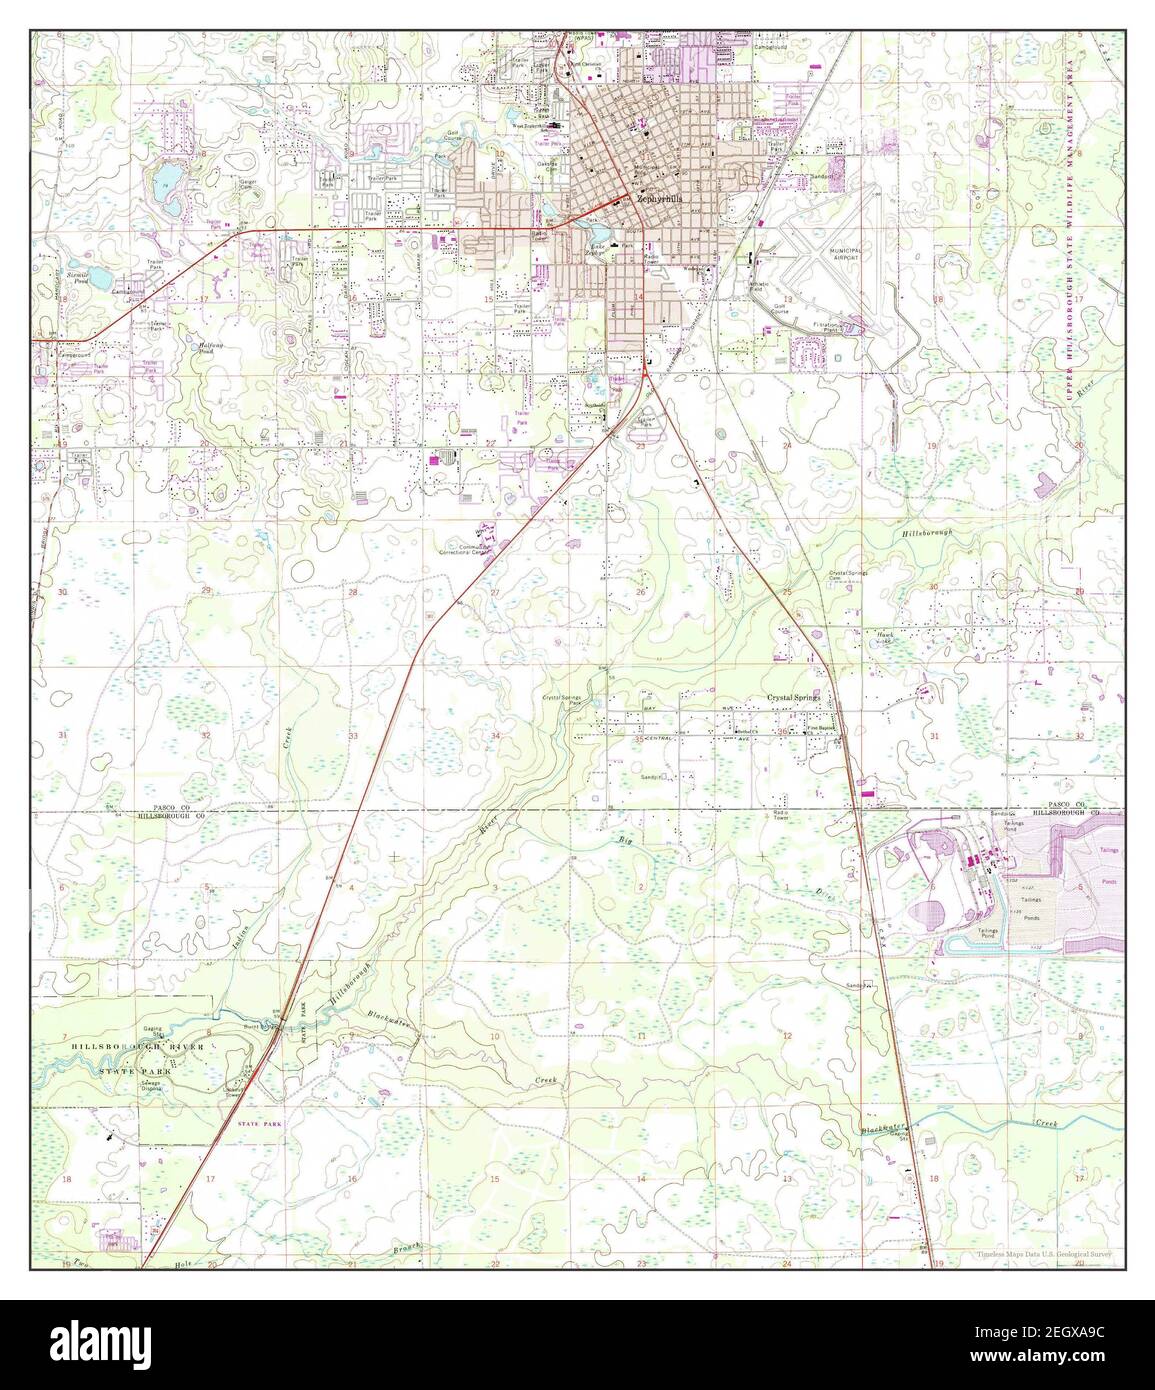 Zephyrhills, Florida, Karte 1975, 1:24000, Vereinigte Staaten von Amerika von Timeless Maps, Daten U.S. Geological Survey Stockfoto